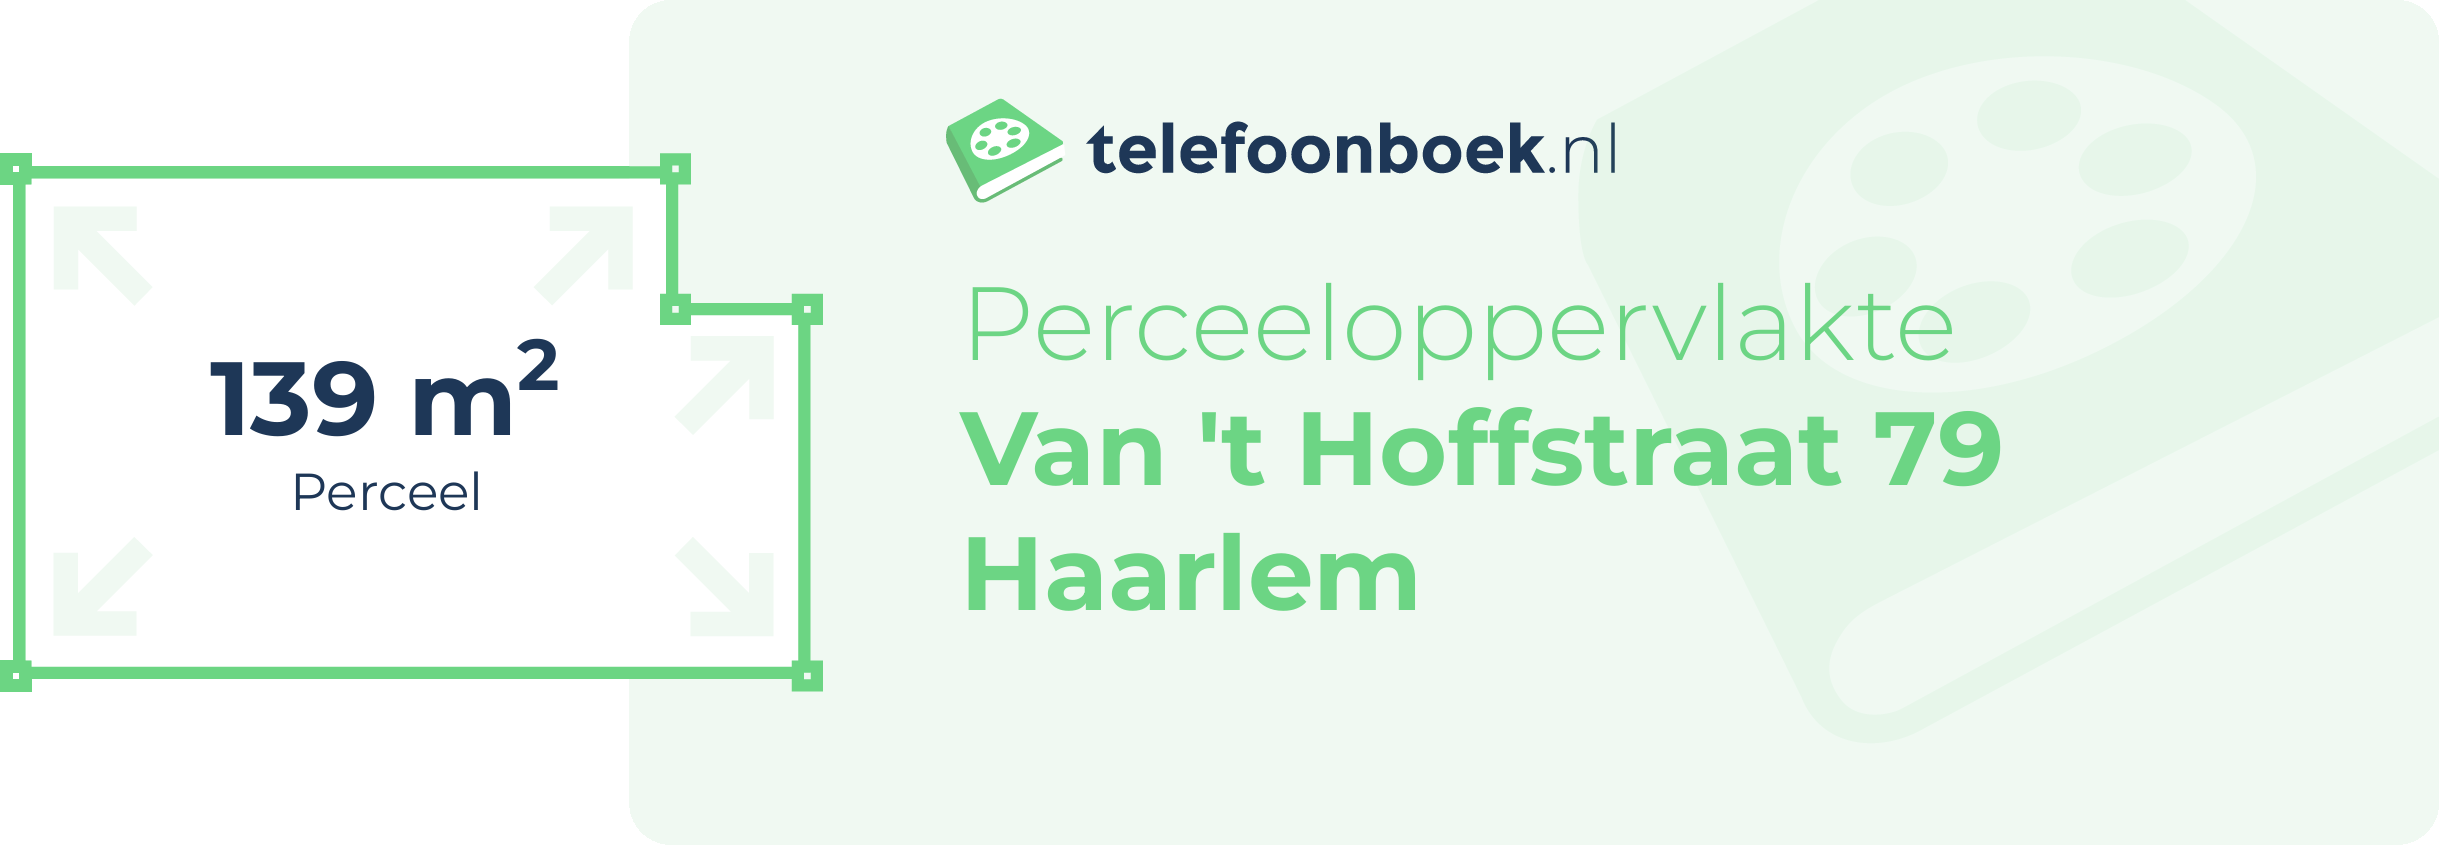 Perceeloppervlakte Van 't Hoffstraat 79 Haarlem